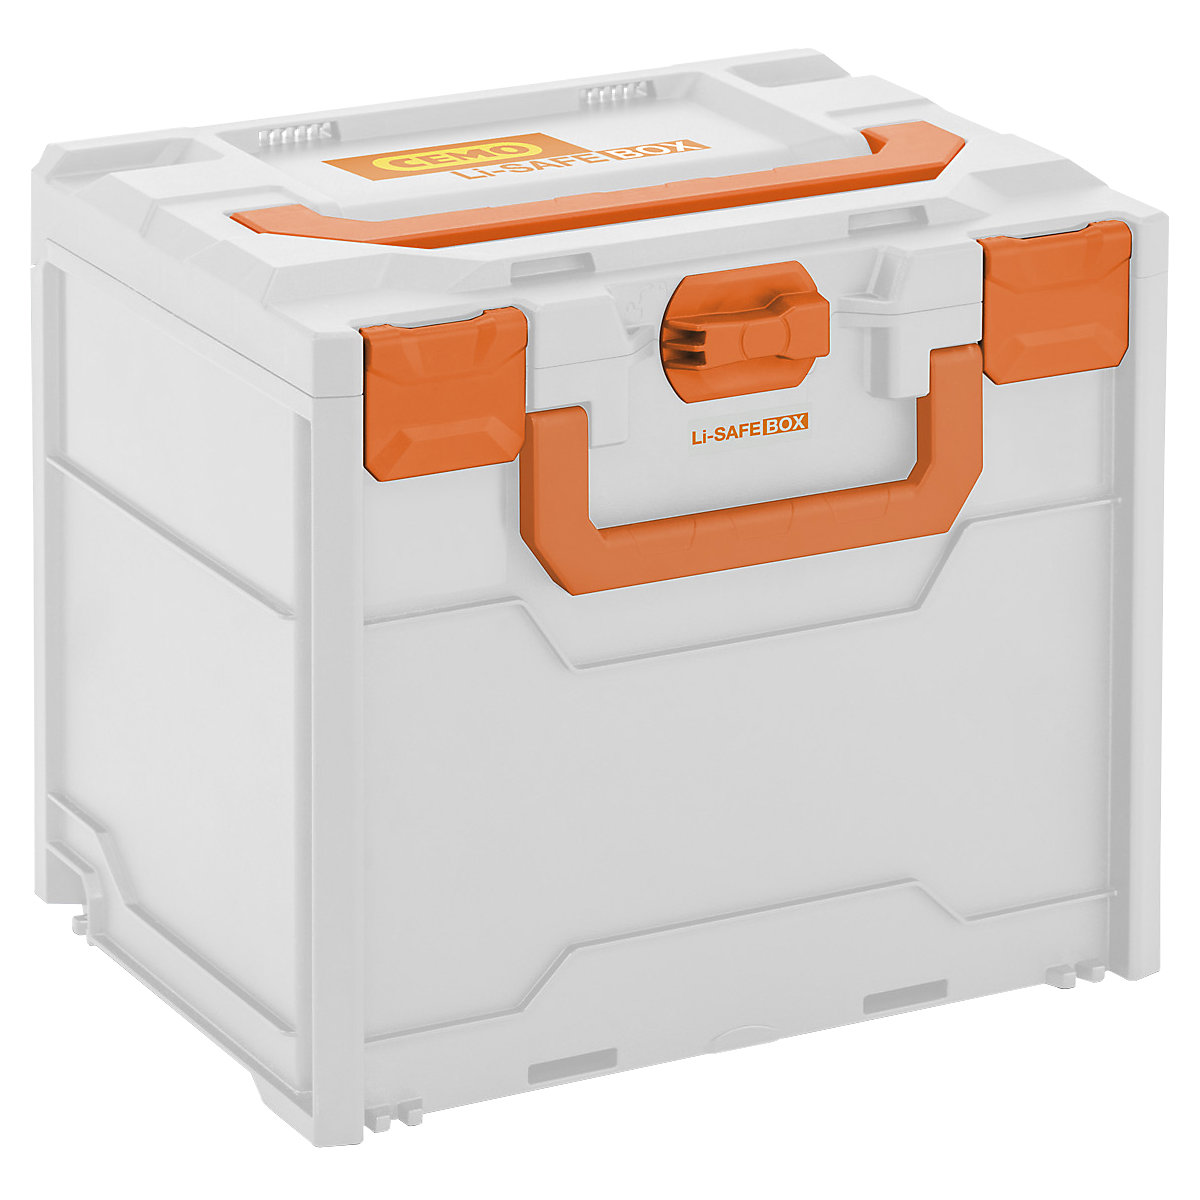 Systémový protipožární box na akumulátory Li-SAFE – CEMO, pro skladování a přepravu, model 3-S, d x š x v 400 x 300 x 340 mm-1